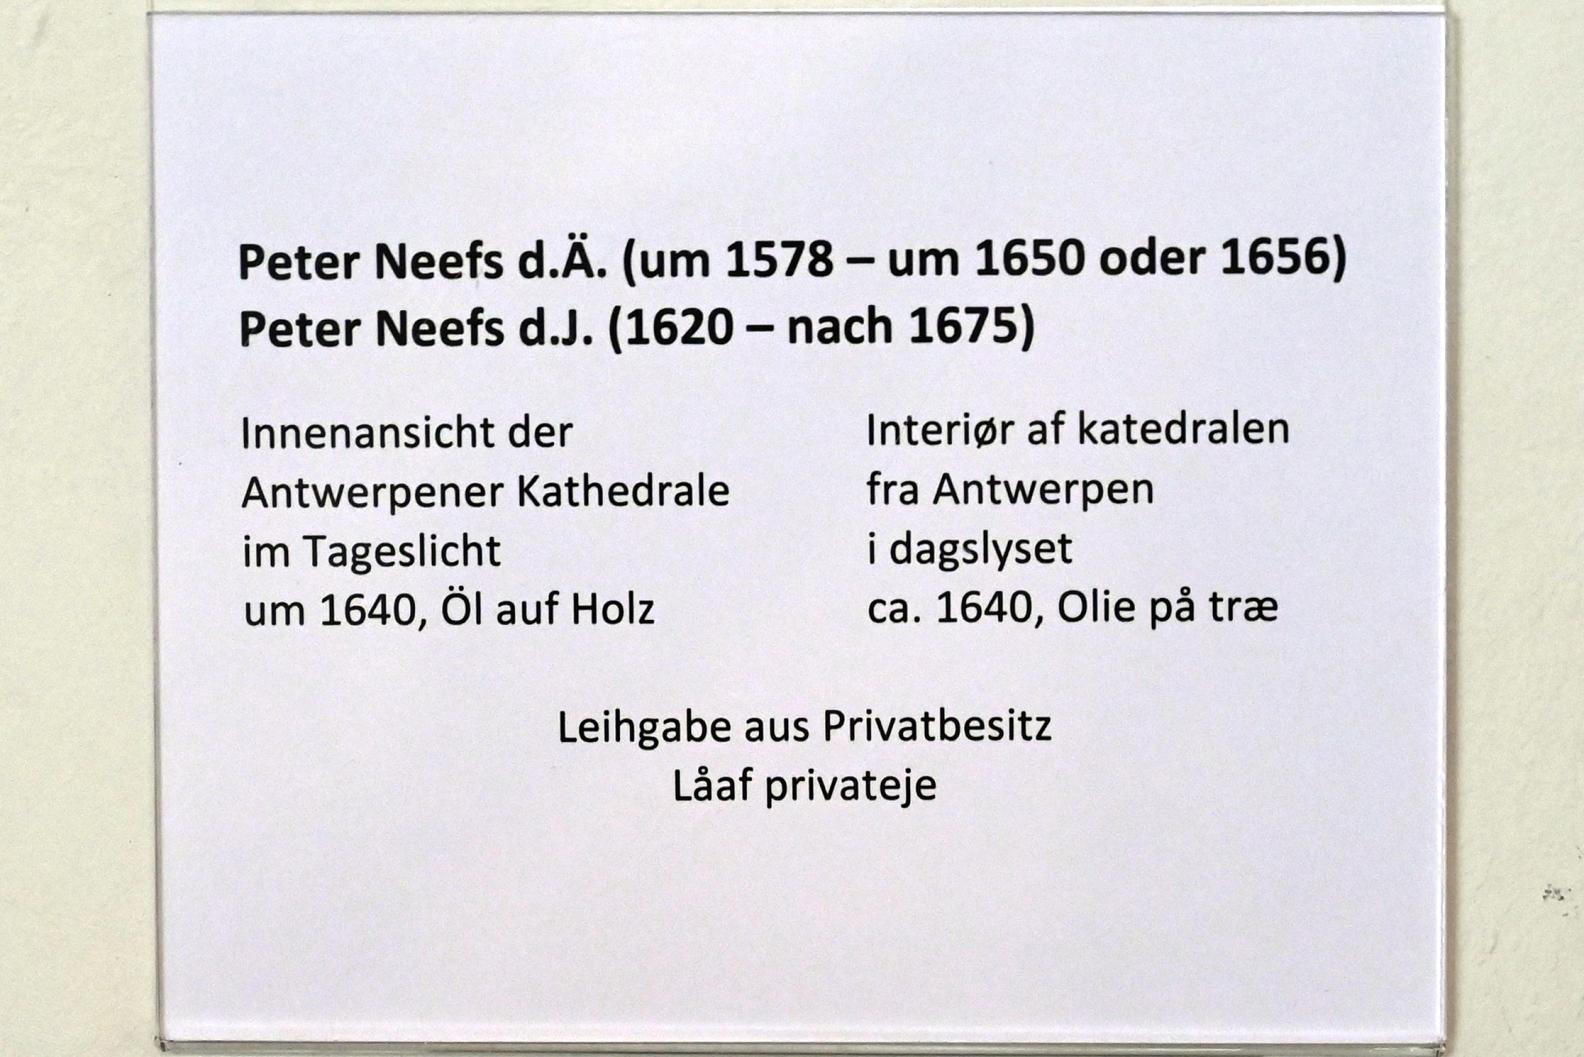 Peeter Neeffs der Ältere (1615–1645), Innenansicht der Antwerpener Kathedrale im Tageslicht, Schleswig, Landesmuseum für Kunst und Kulturgeschichte, Saal 22, um 1640, Bild 2/2